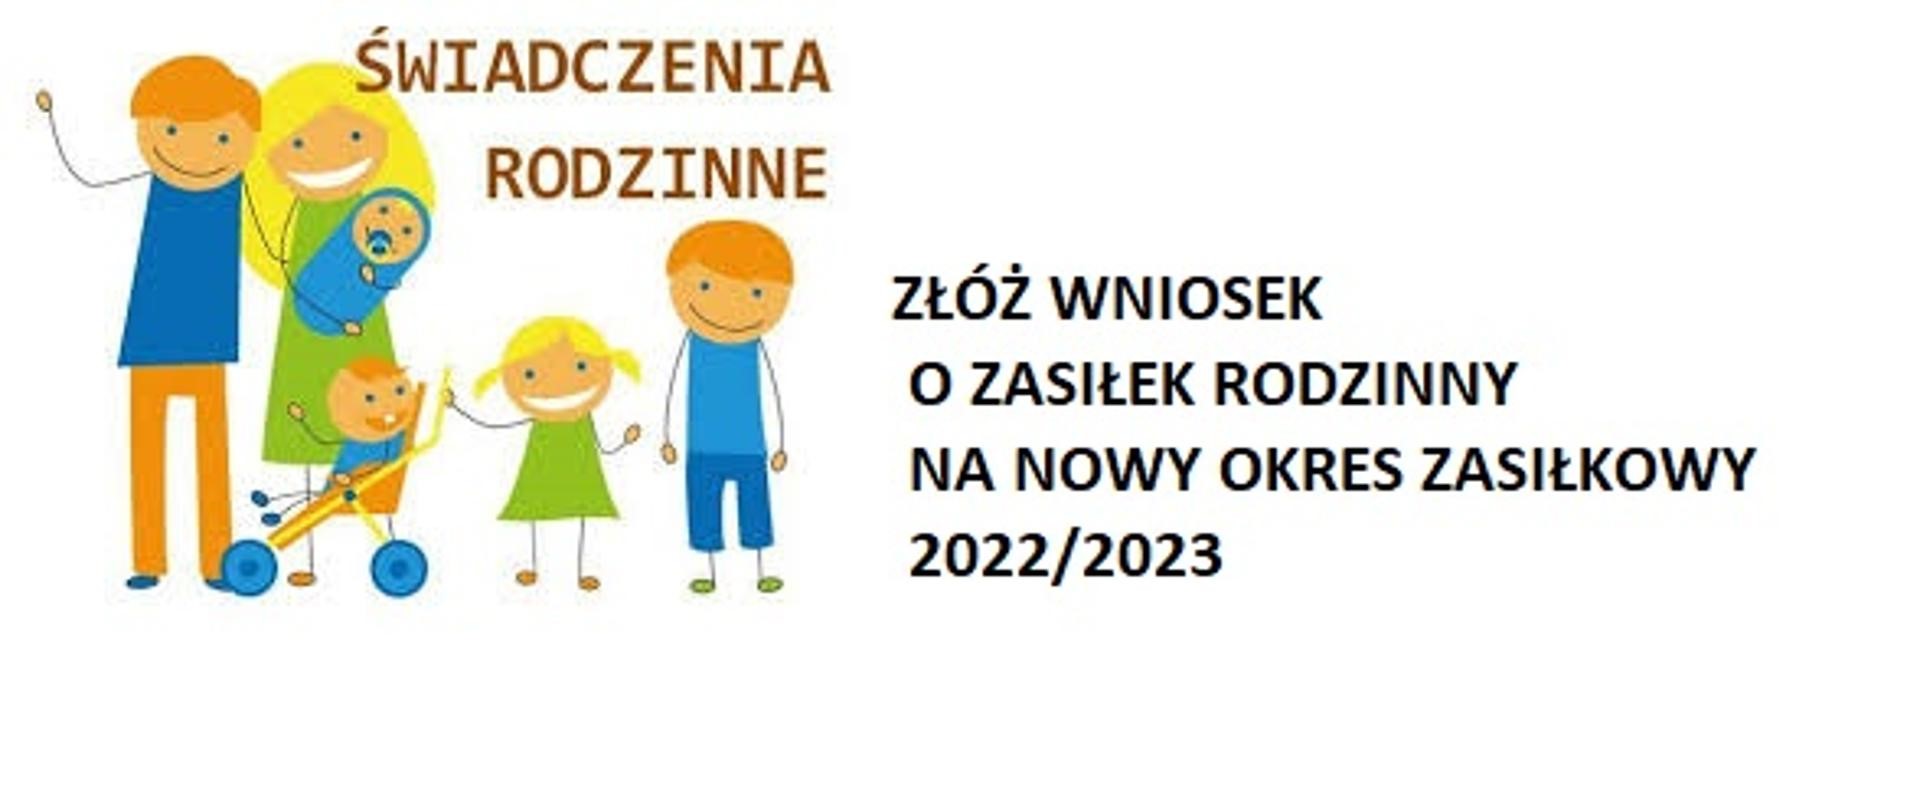 Złóż wniosek o zasiłek rodzinny na nowy okres zasiłkowy 2022/2023